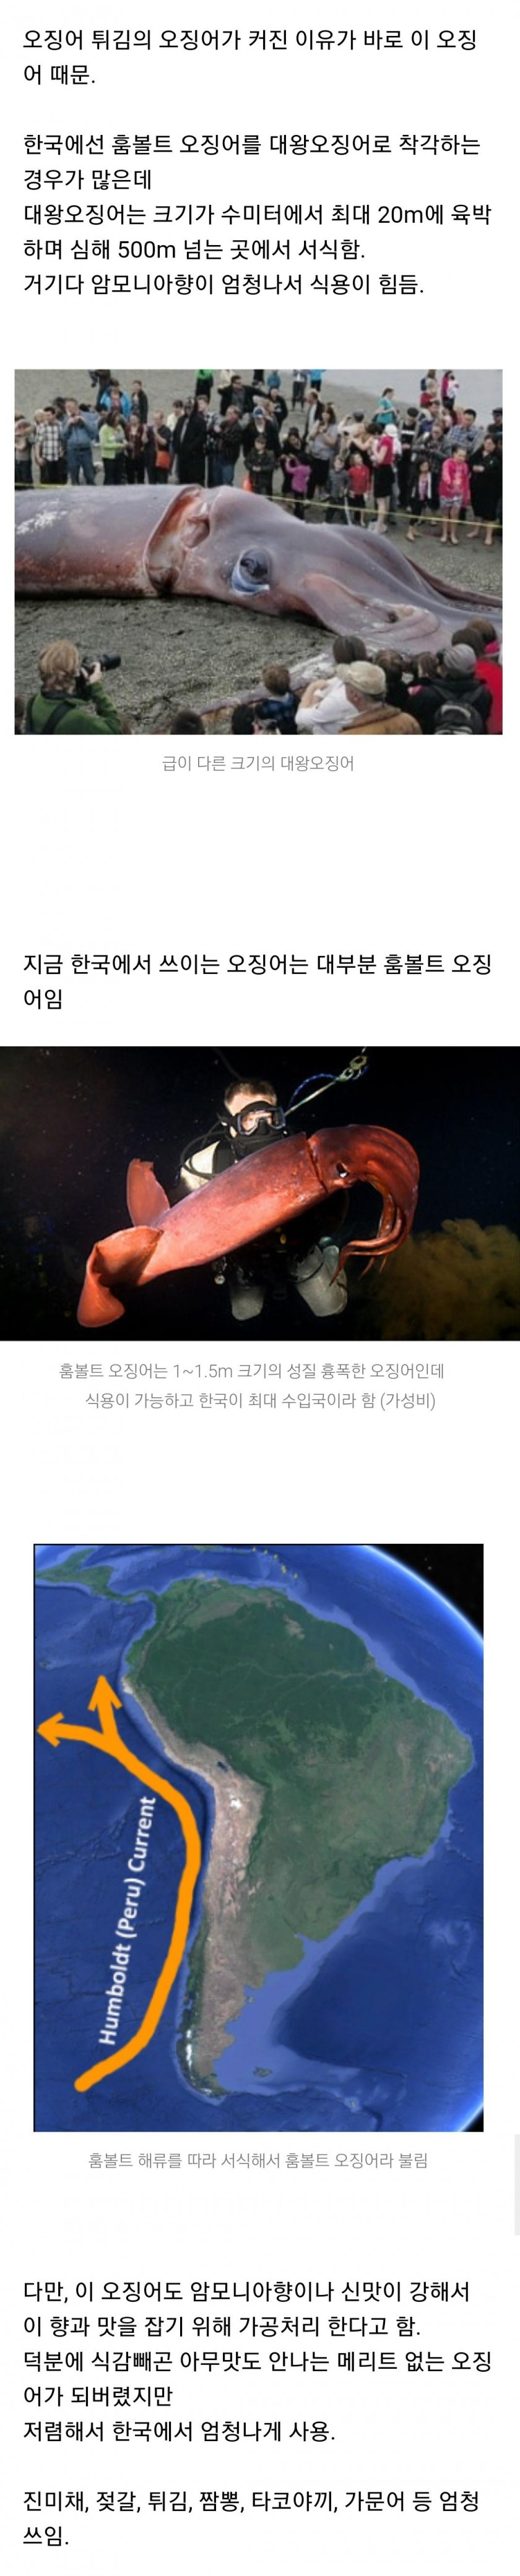 한국을 장악한 오징어...홈볼트 오징어